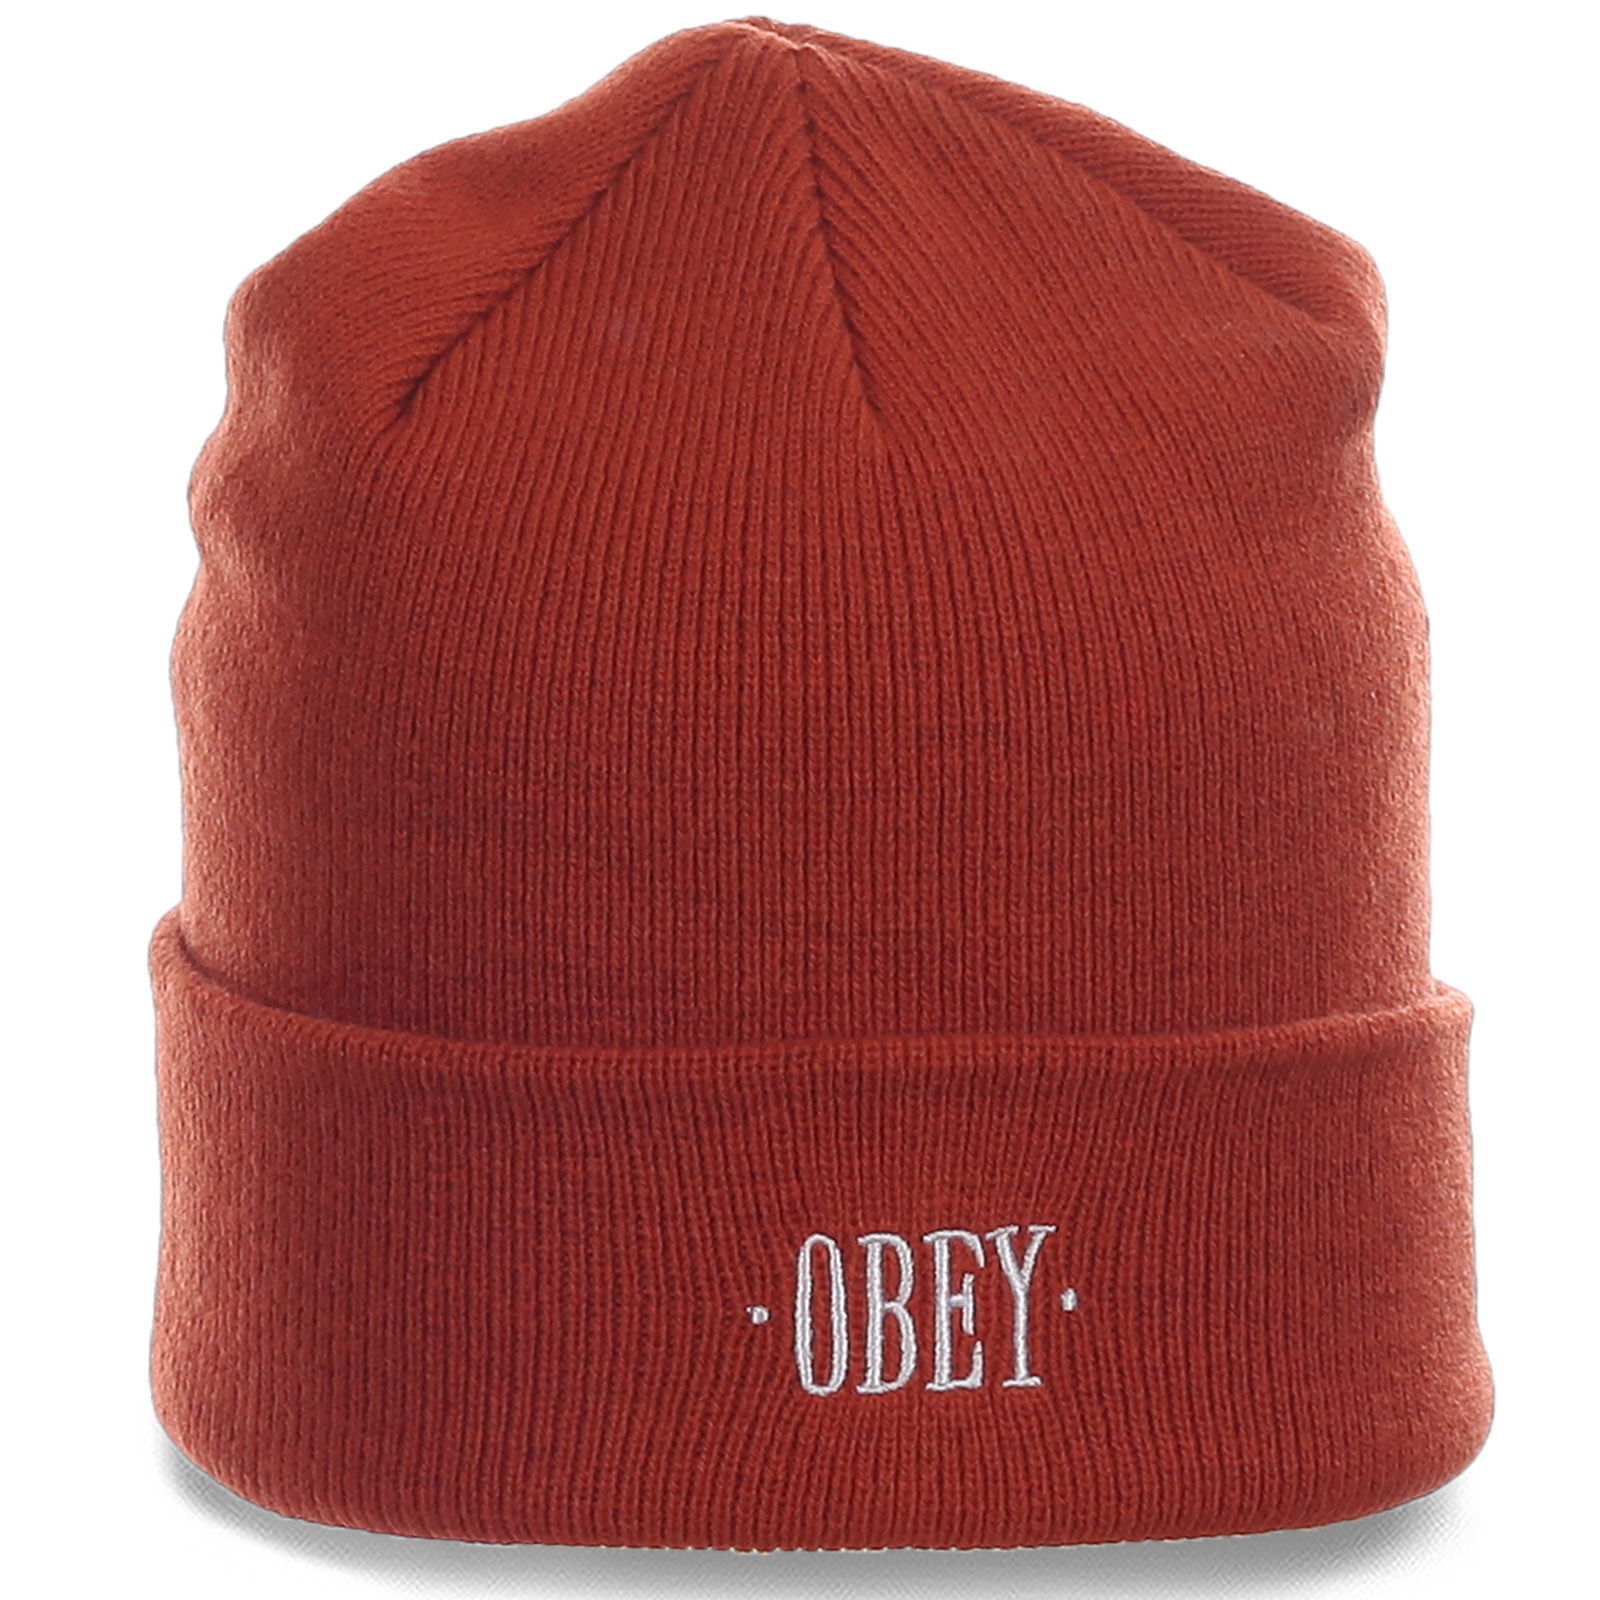 Заказать городскую стильную мужскую шапку солидного бренда Obey по лучшей цене